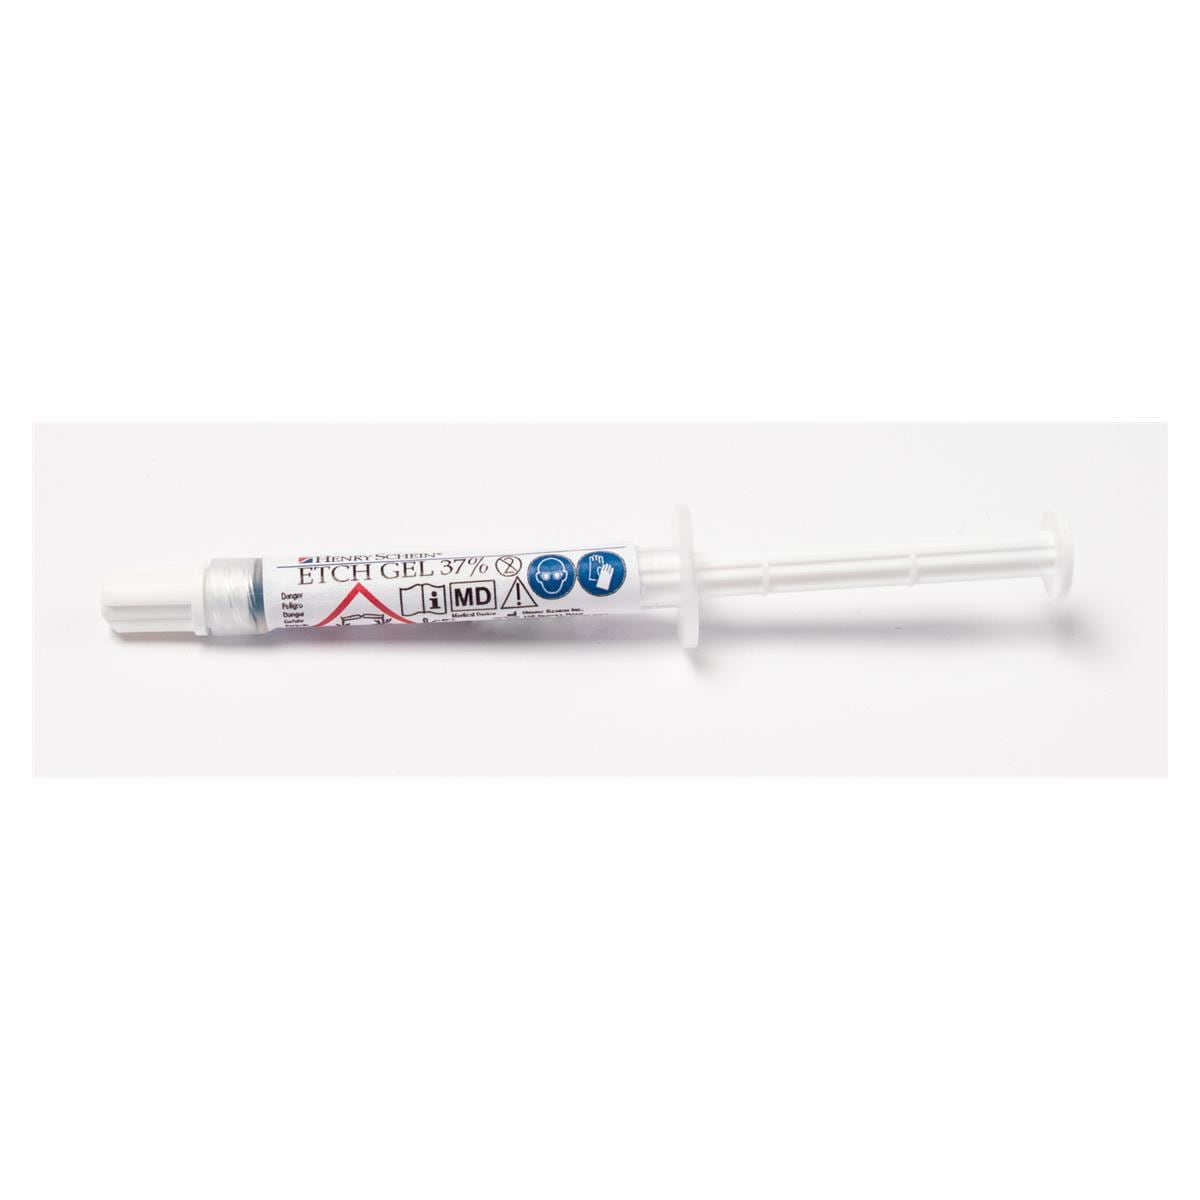 Etch Gel 37% Syringe Kit - 12x 1,2 g et 50 embouts